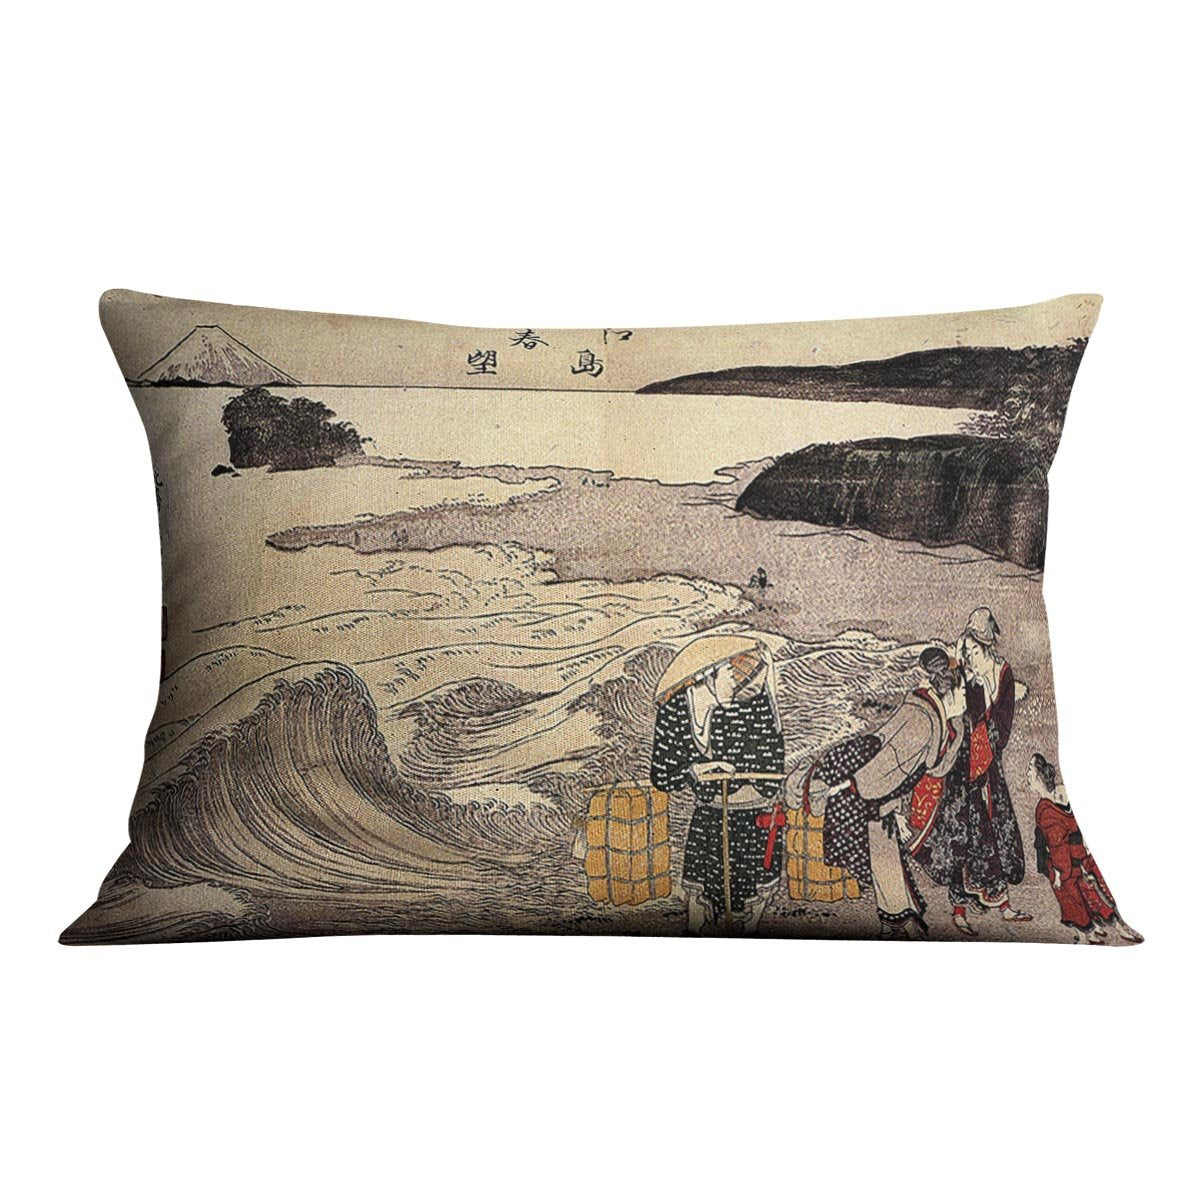 Women on the beach of Enoshima by Hokusai Throw Pillow